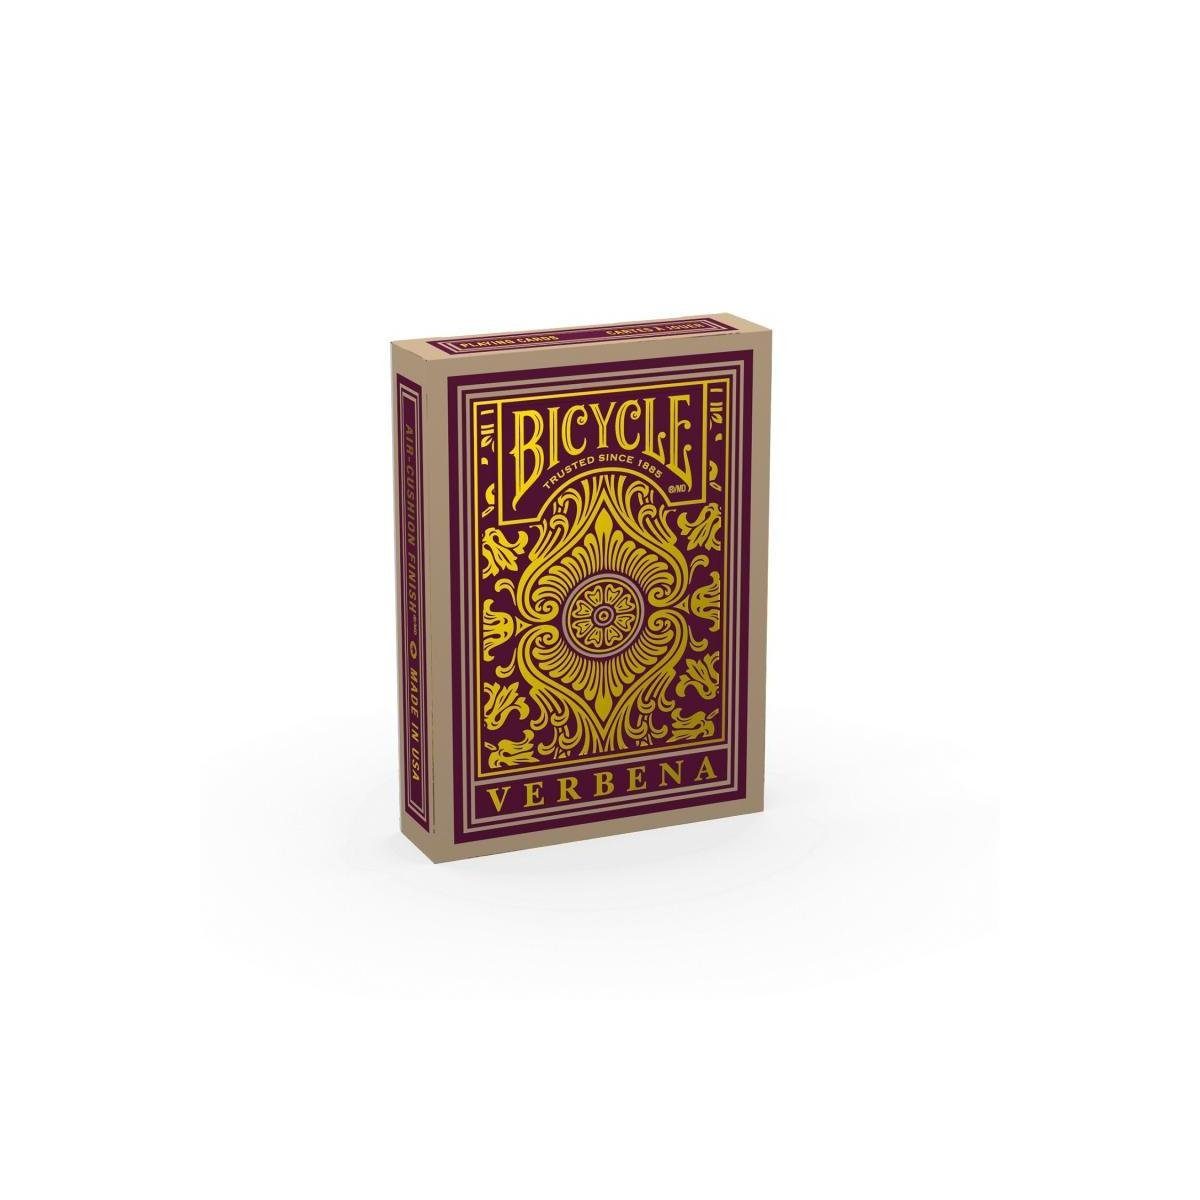 BICYCLE Spiel, Familienspiel 10033558 - Bicycle® - Verbena, Spielkarten, Strategiespiel